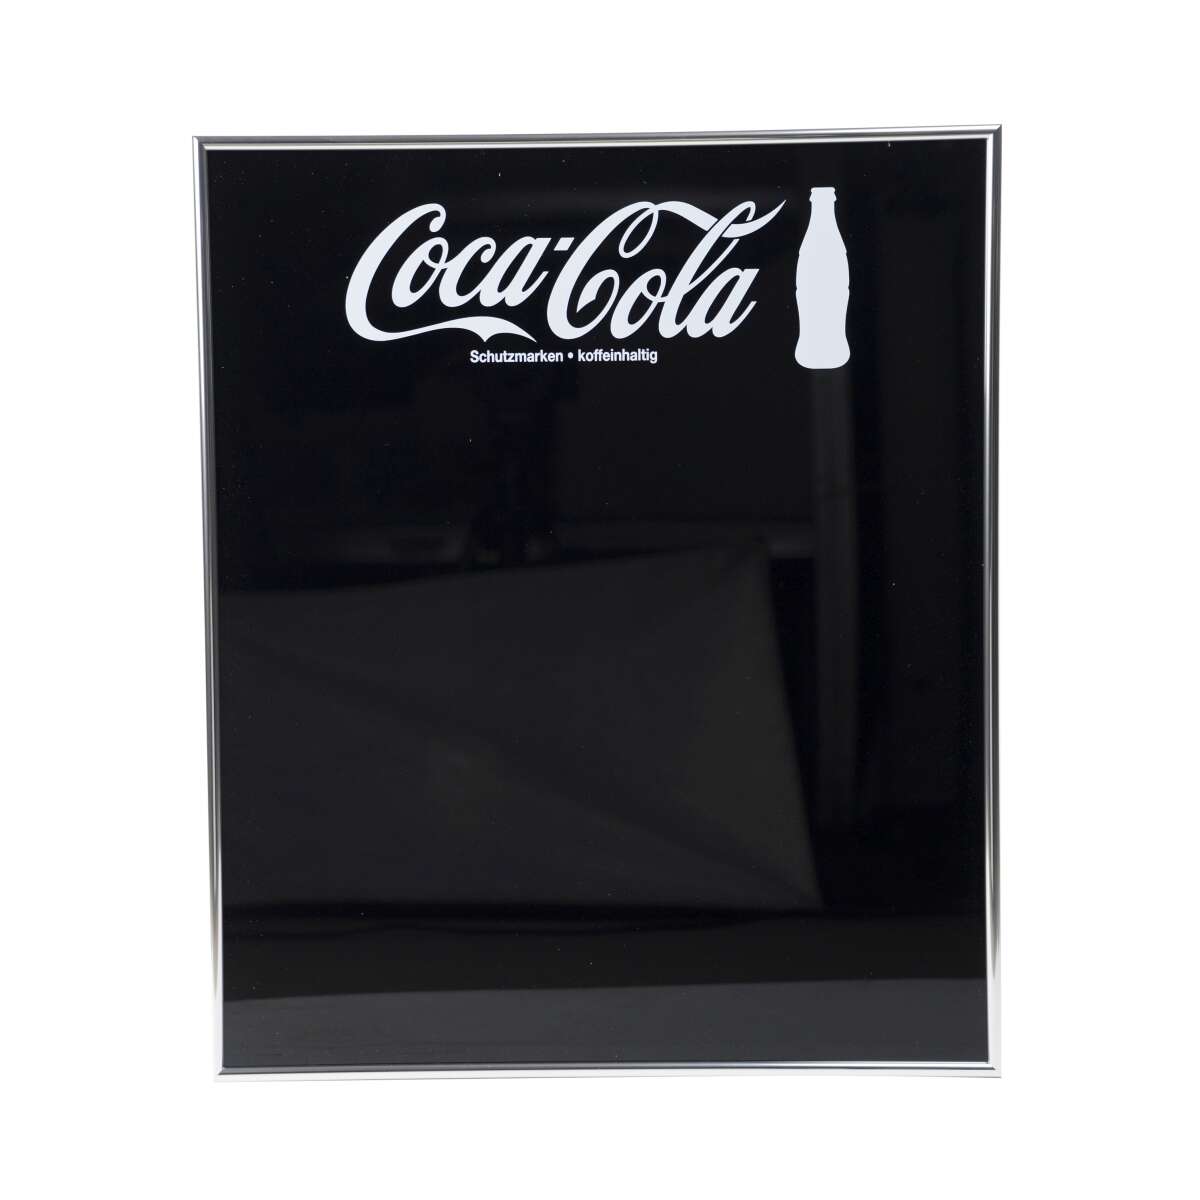 Coca Cola Whiteboard Tafel 60x50 schwarz Stift Marker